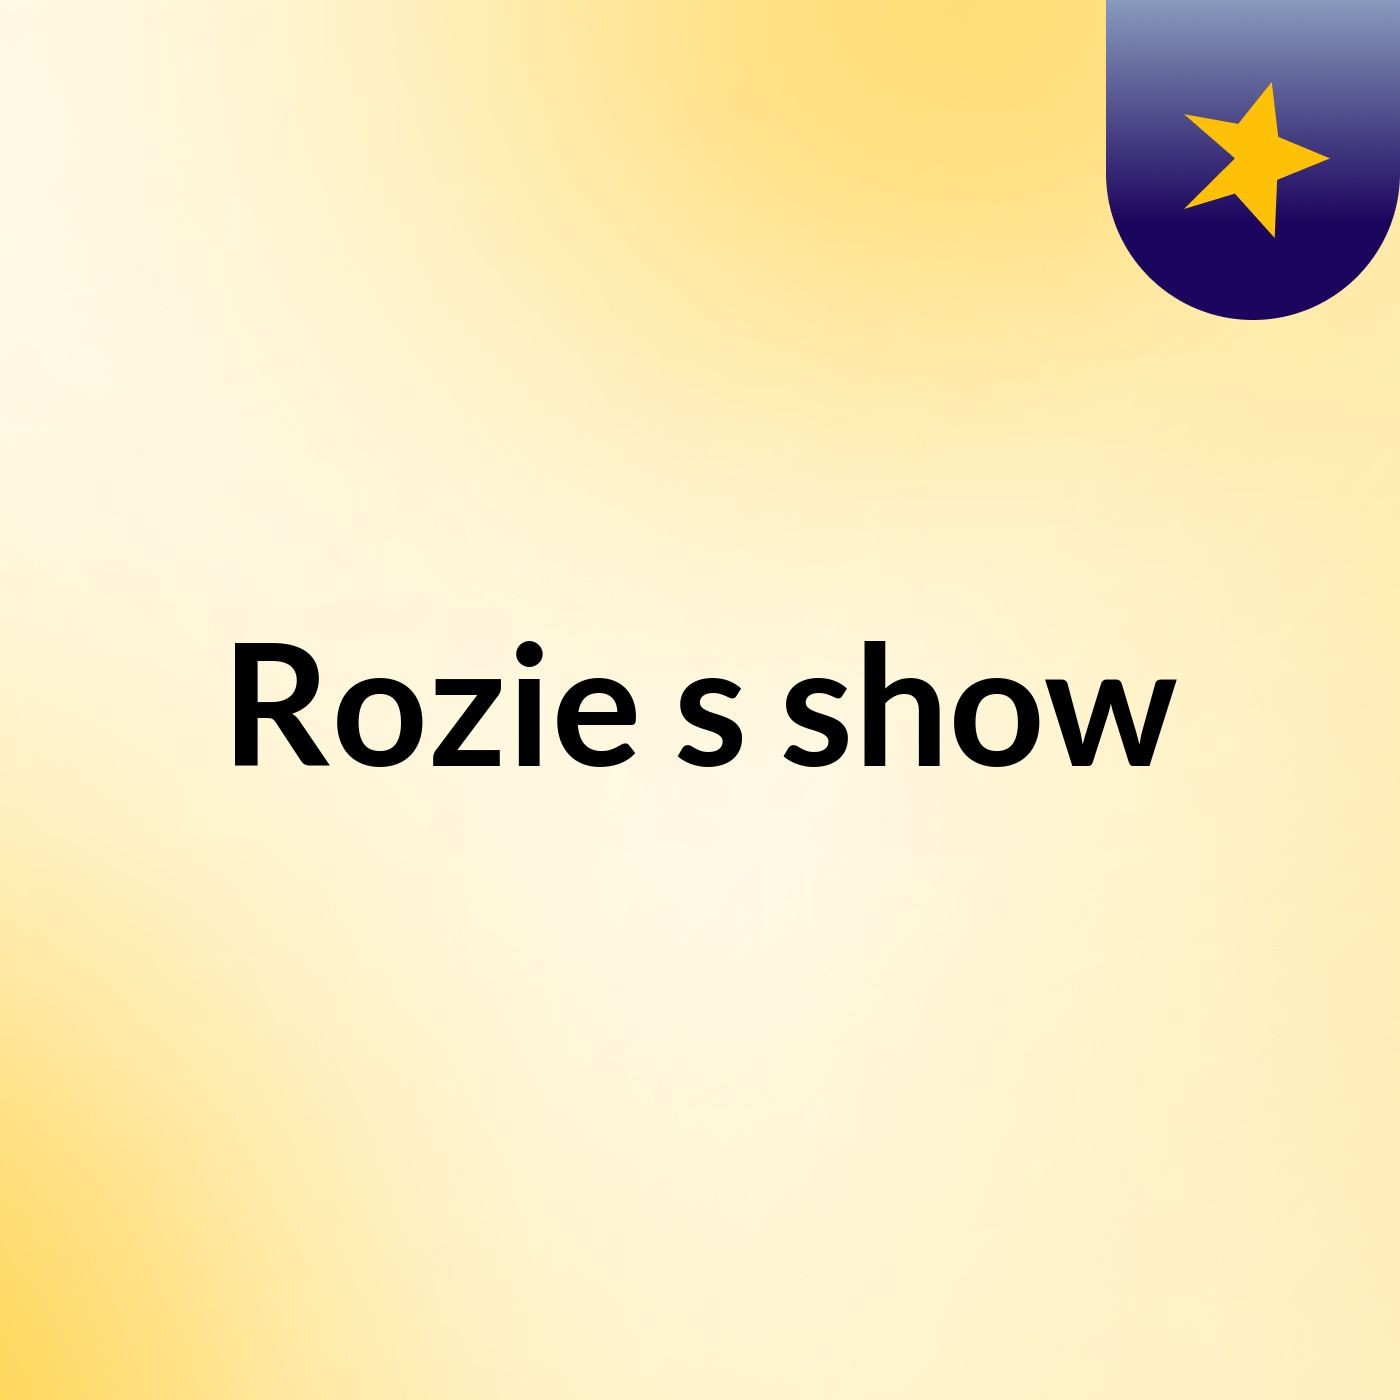 Rozie's show